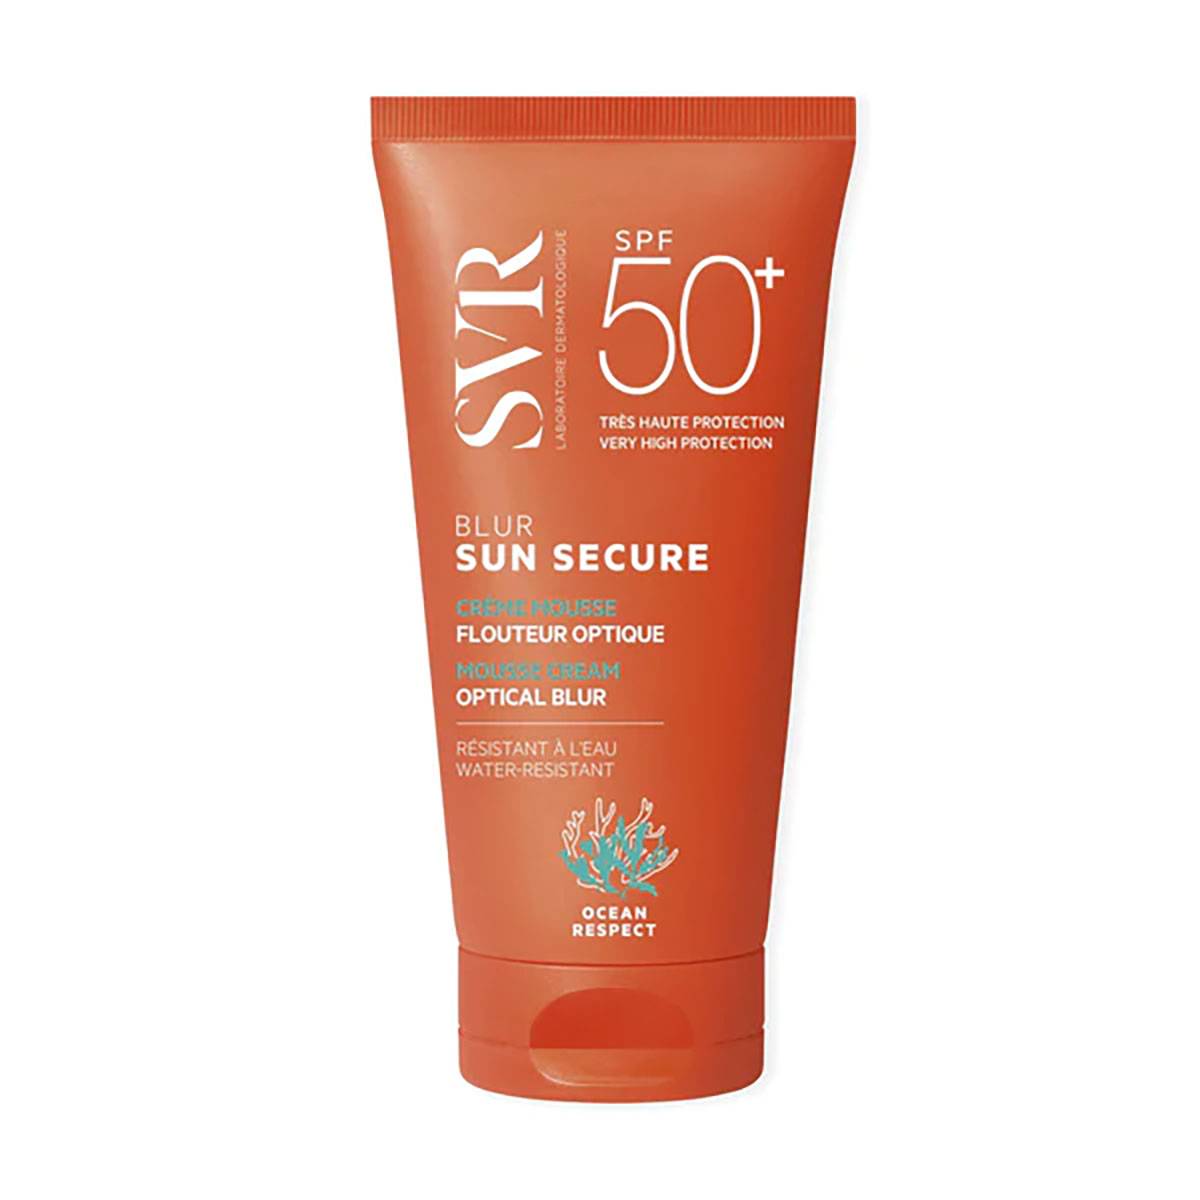 Bezzapachowy ochronny krem optycznie ujednolicający skórę SPF50+ SVR Sun Secure Blur Sans Parfum / SVR.pl, cena: 95,20 zł / (Fot. Materiały prasowe)